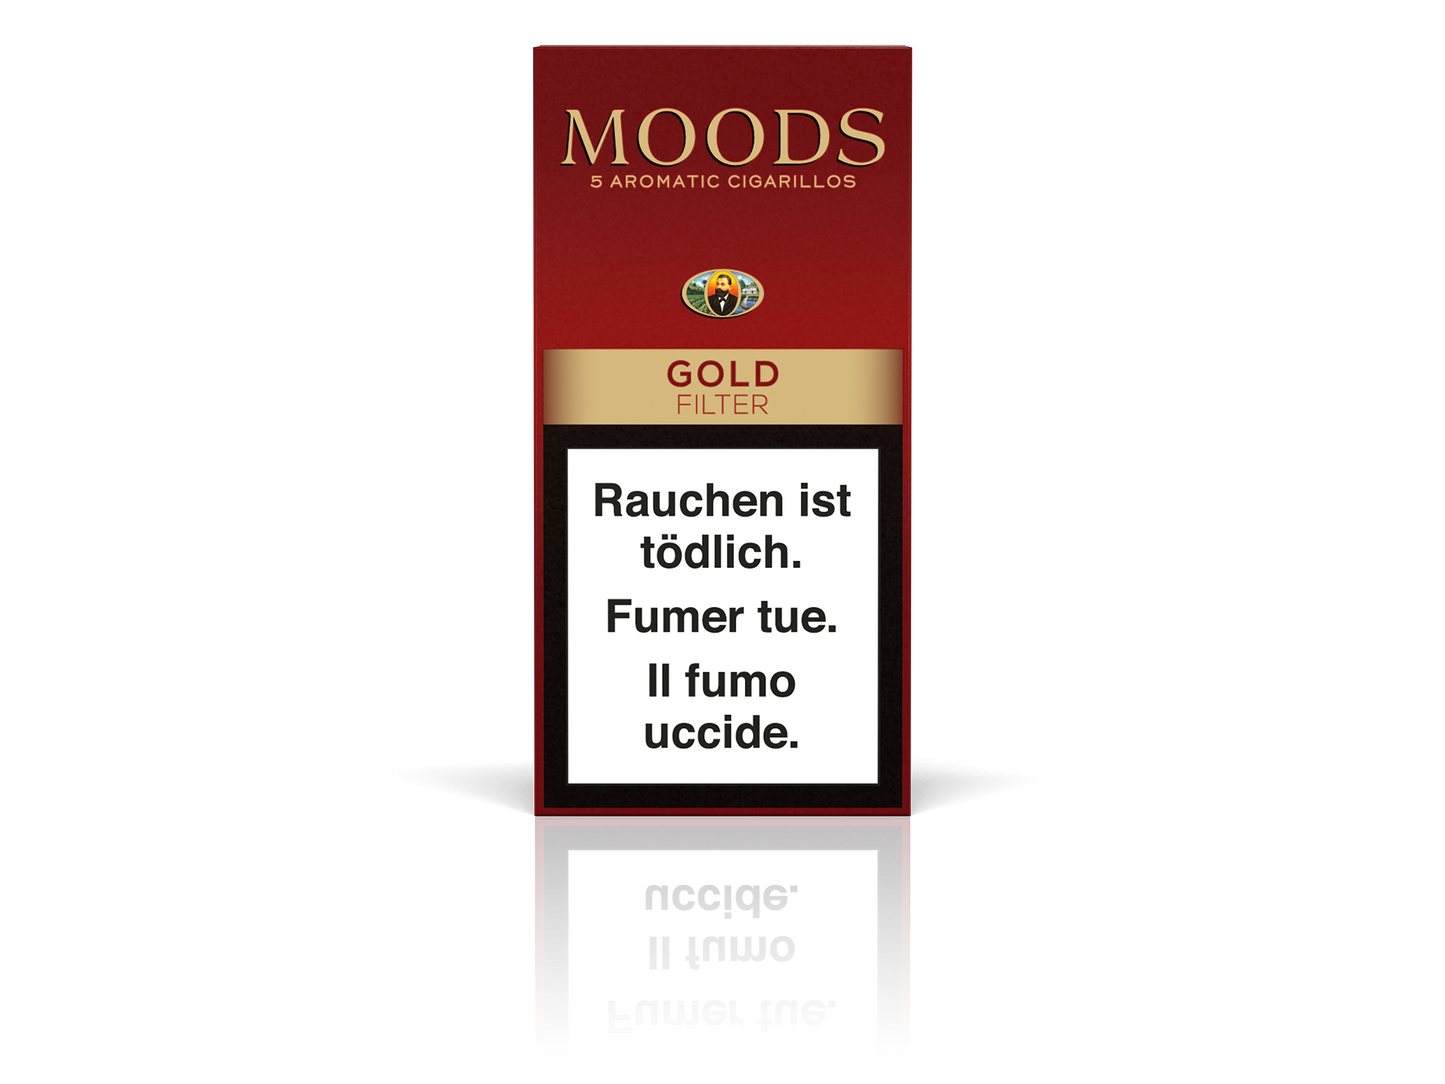 Dannemann Moods Gold Filter 5 Piece(s)